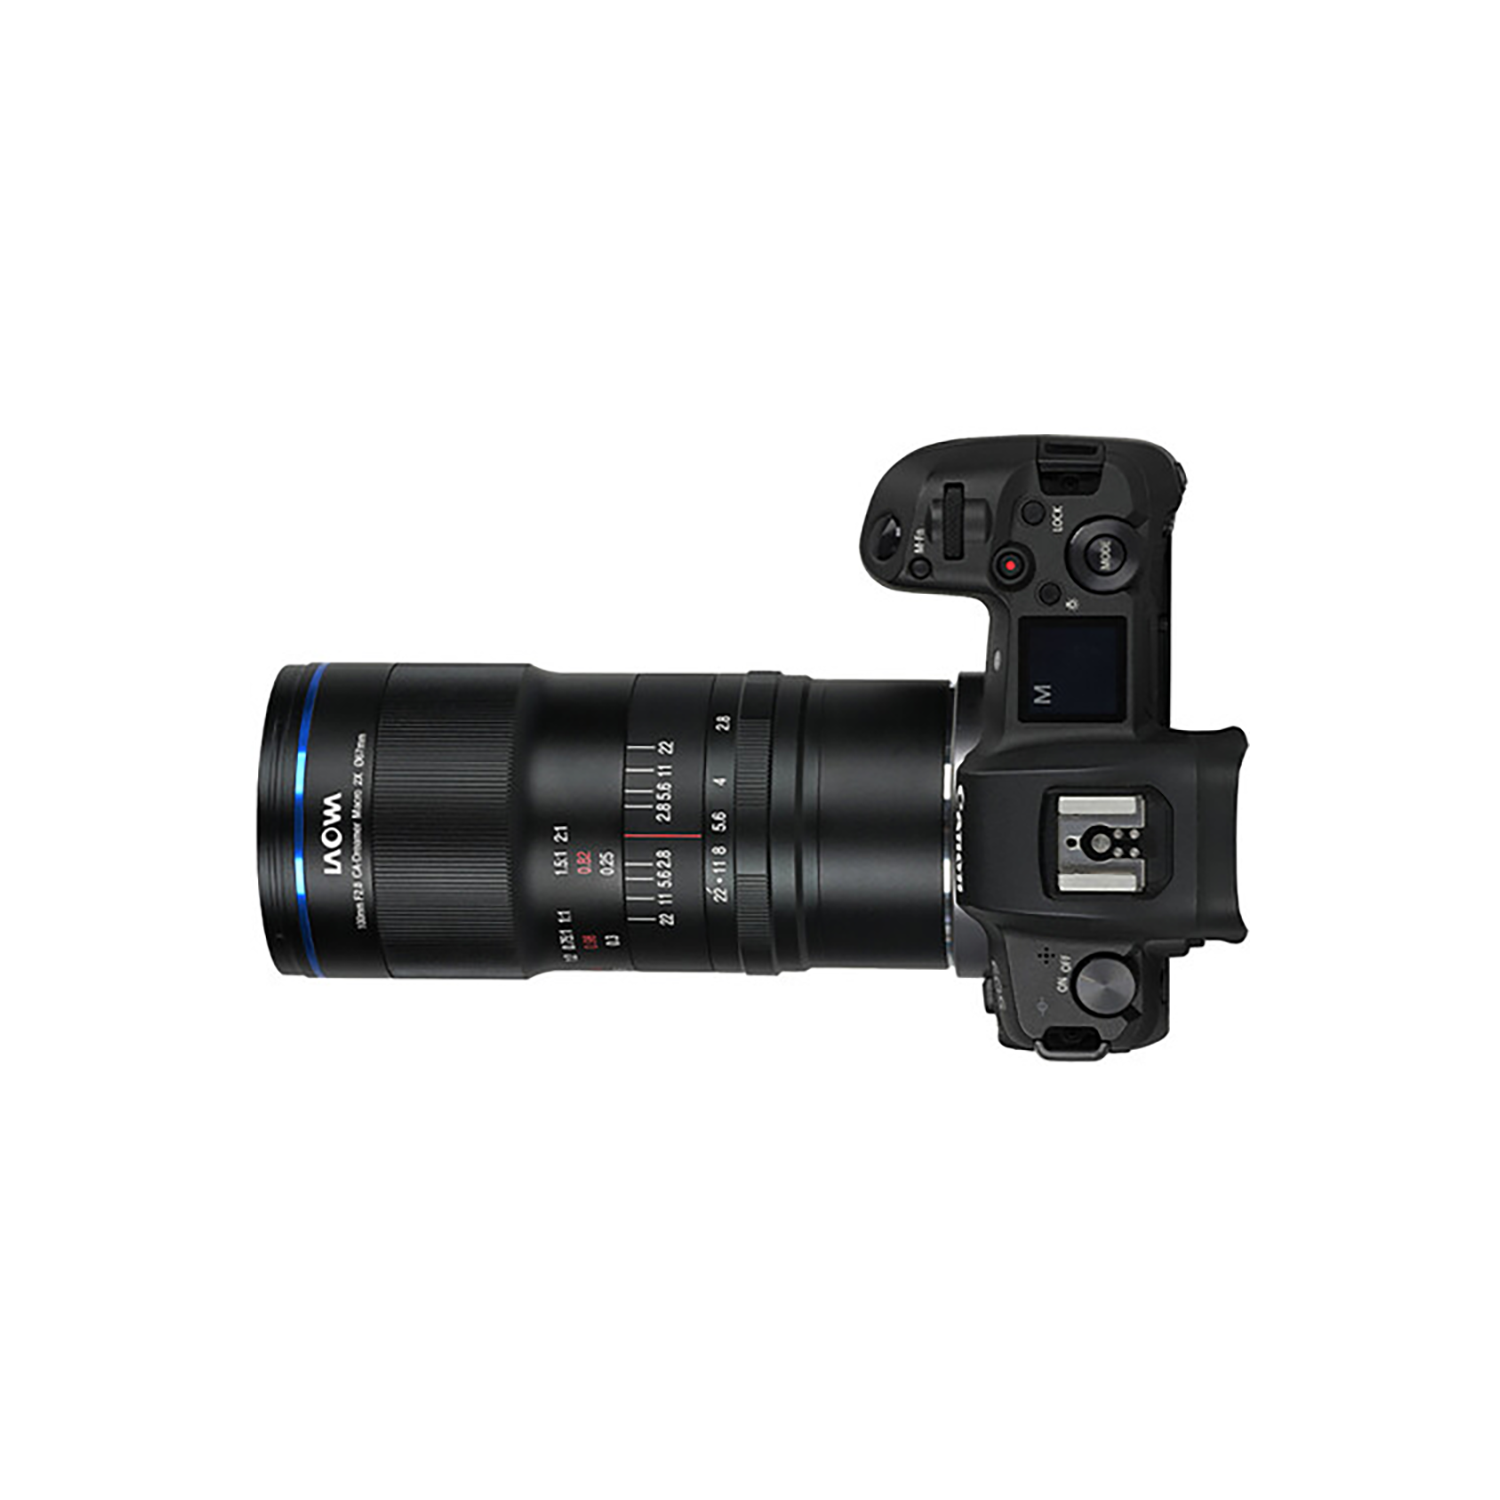 Laowa 100 mm f / 2,8 2x lentille d'apo macro ultra pour canon ef (ouverture manuelle)